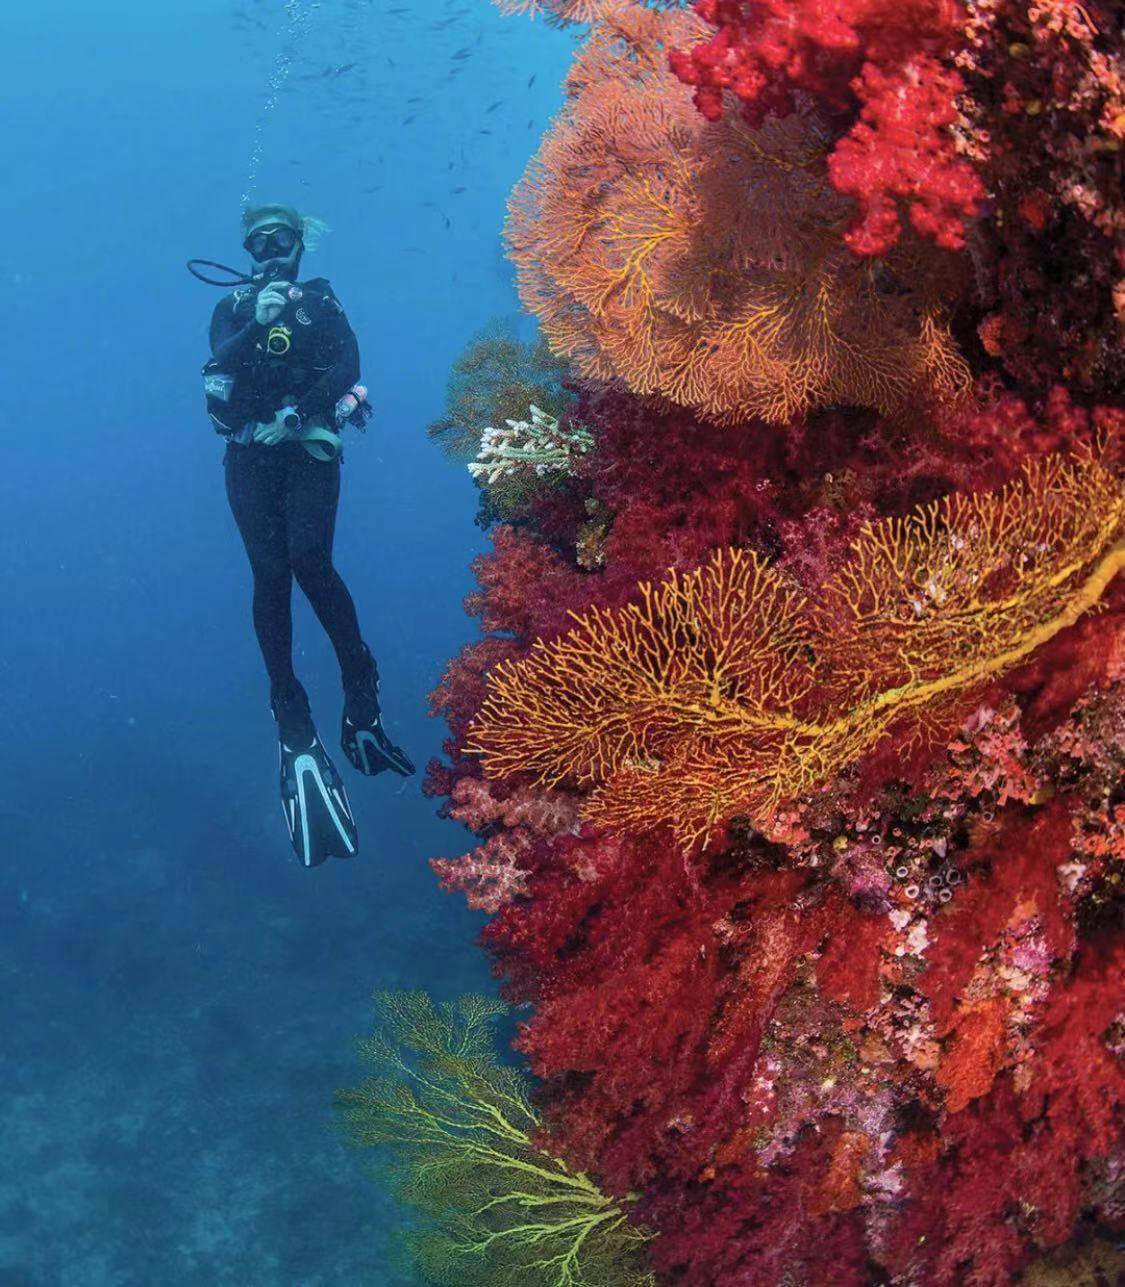 云游四方 潜入迷人的珊瑚世界 加入惊险刺激的 海底总动员 斐济